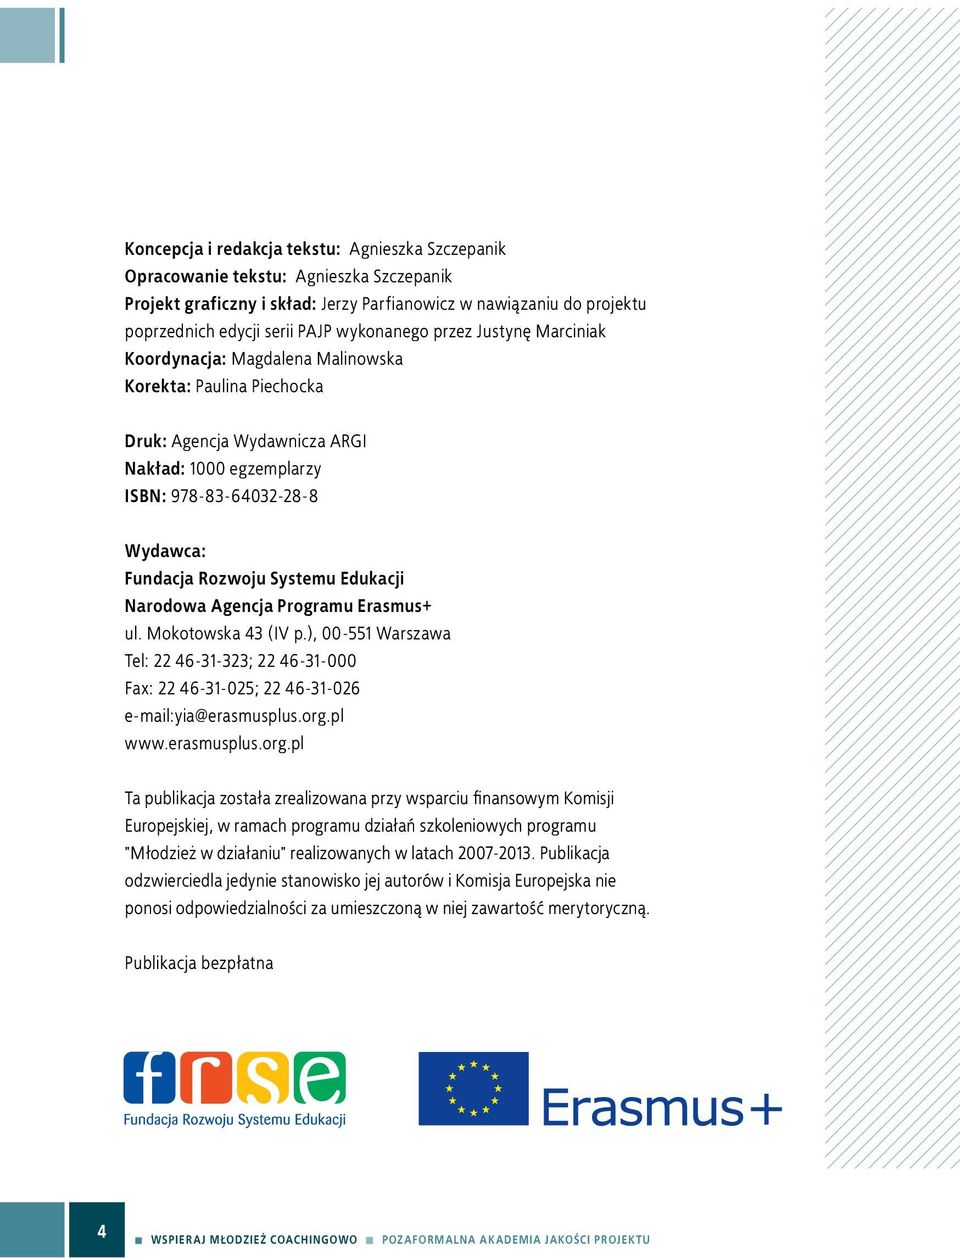 Rozwoju Systemu Edukacji Narodowa Agencja Programu Erasmus+ ul. Mokotowska 43 (IV p.), 00-551 Warszawa Tel: 22 46-31-323; 22 46-31-000 Fax: 22 46-31-025; 22 46-31-026 e-mail:yia@erasmusplus.org.